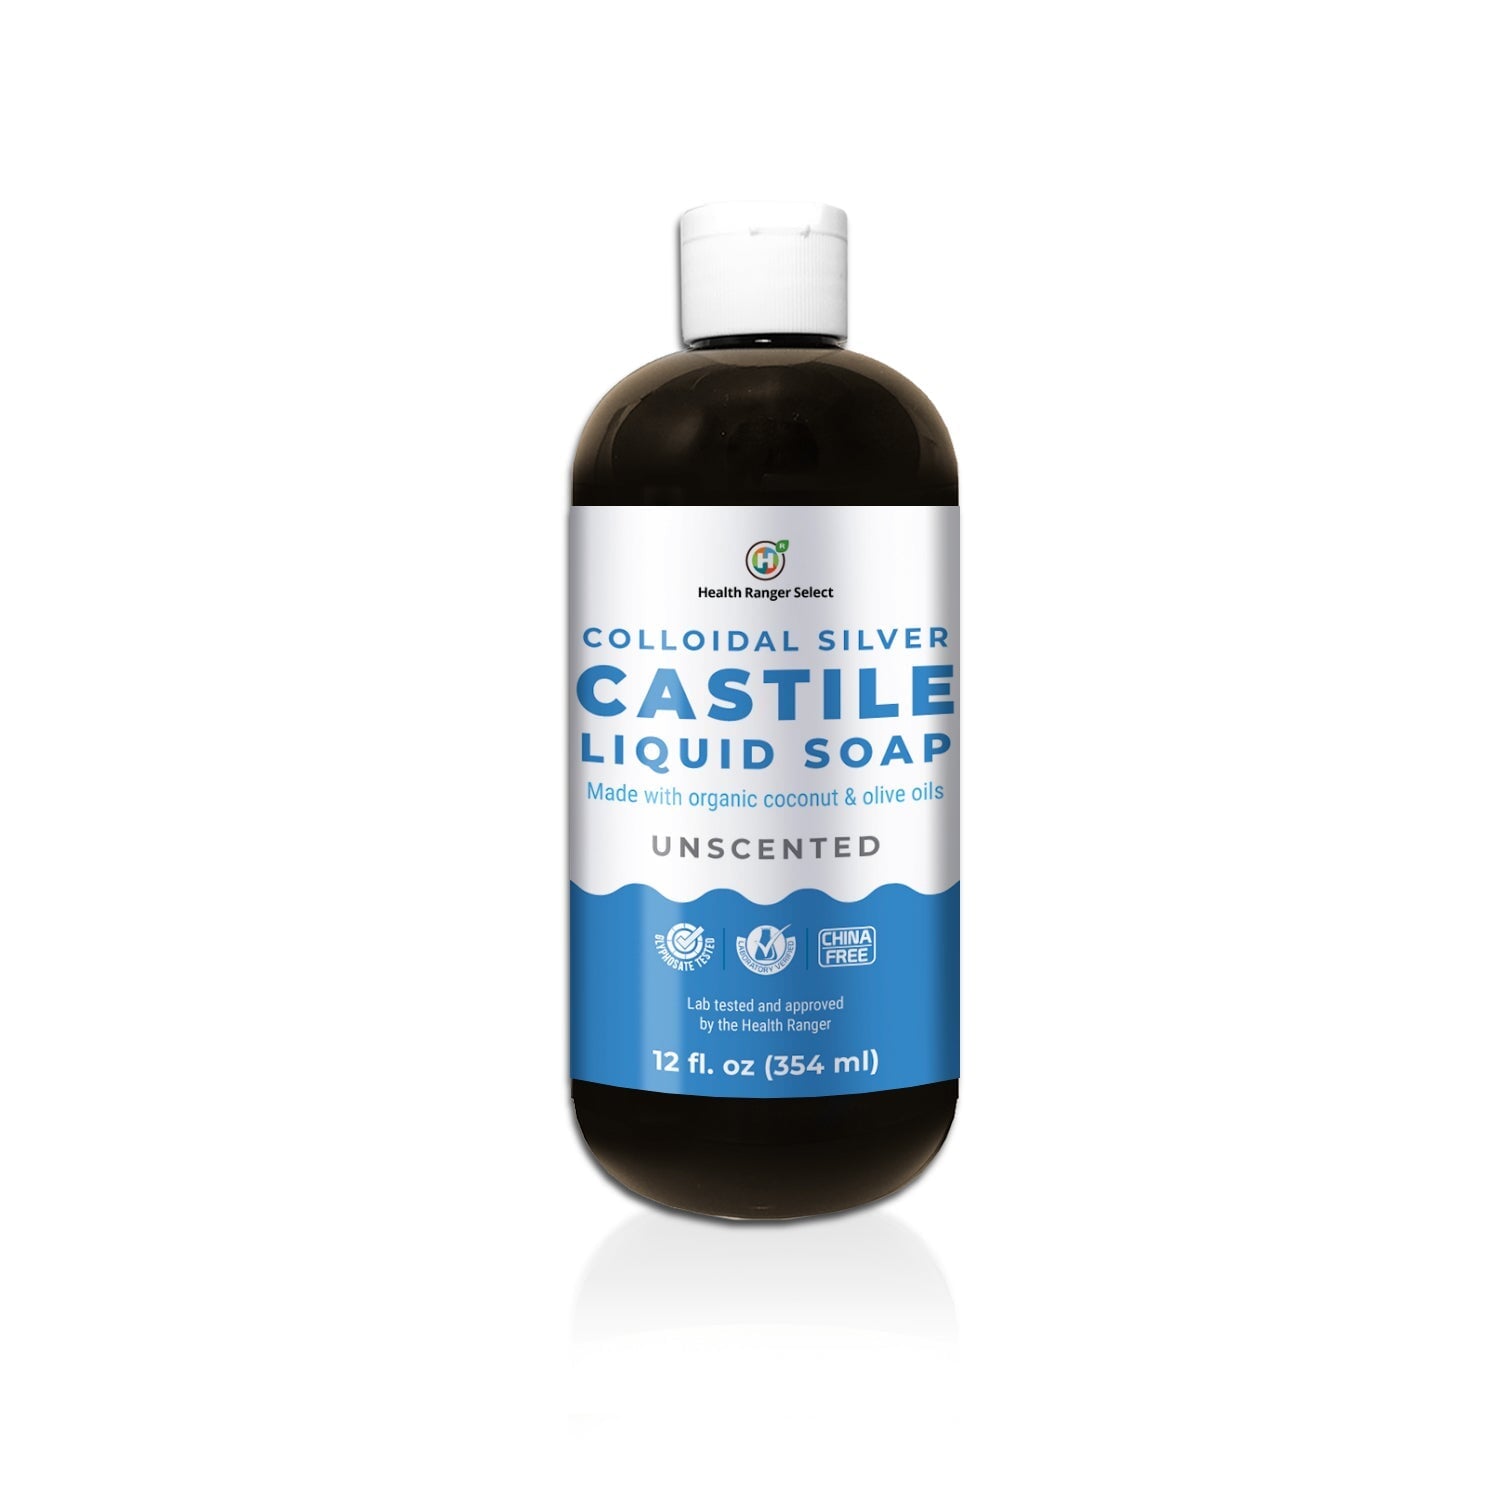 Colloidal Silver Castile Liquid Soap - Unscented 12 oz (354 ml) Personal Care Brighteon Store 